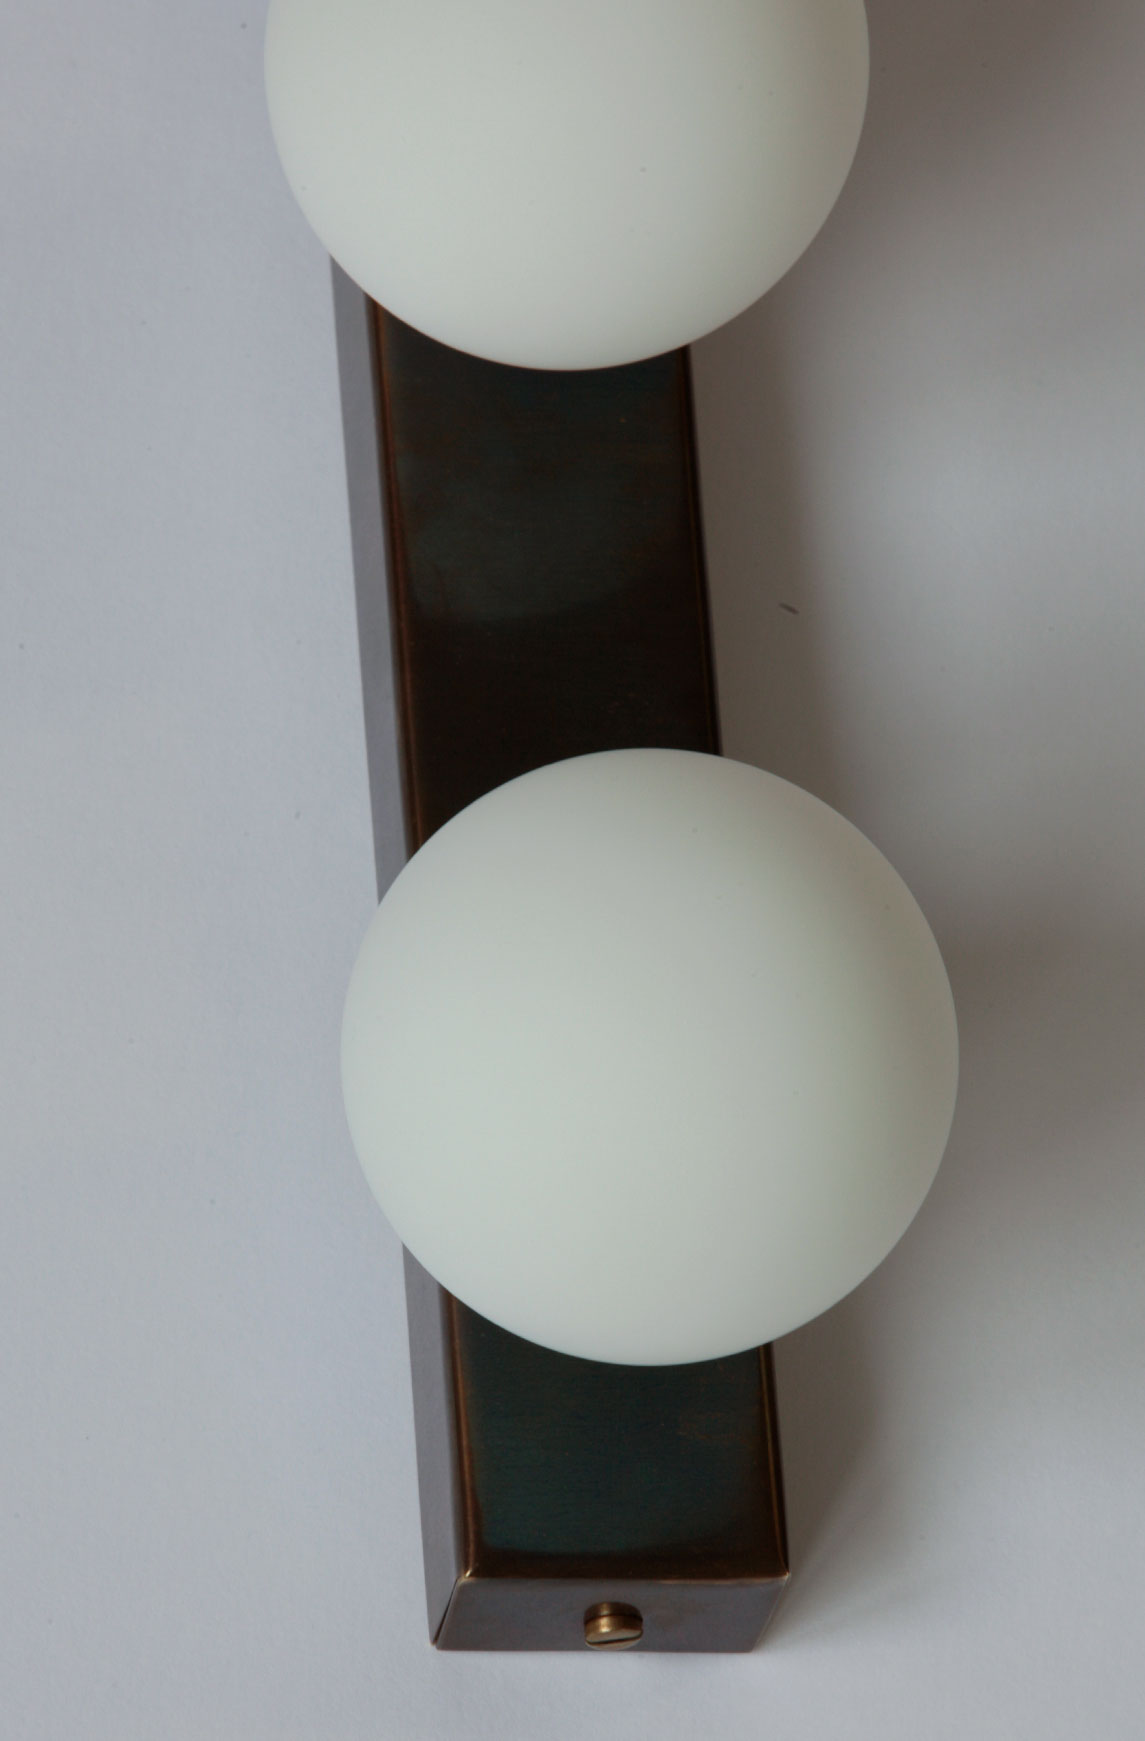 Wandleuchte mit drei Opalglas-Kugeln, mit IP44 auch für Bad-Spiegel: Die matten, kleinen Glaskugel-Schirme (Ø 8 cm) sorgen für weiches, blendarrmes Licht – ideal am Badspiegel